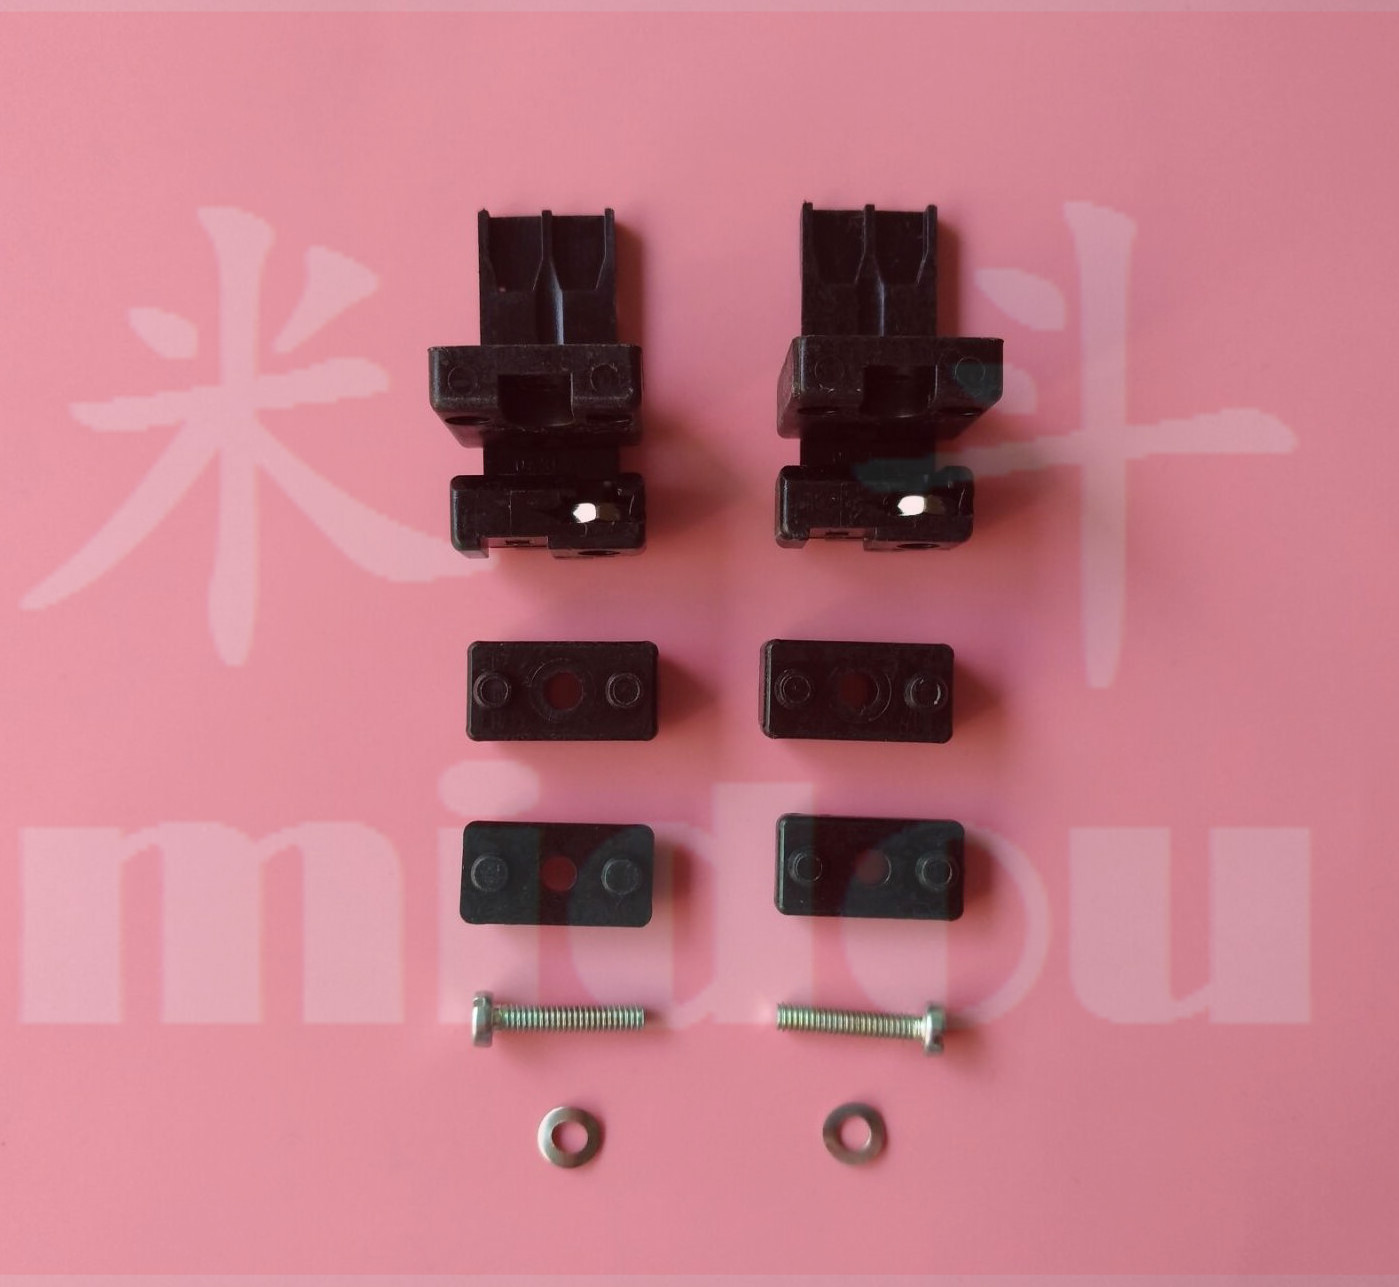 ERNI 043577 欧式插座 DIN41612 连接器 固定件 支架 黑色 塑料件